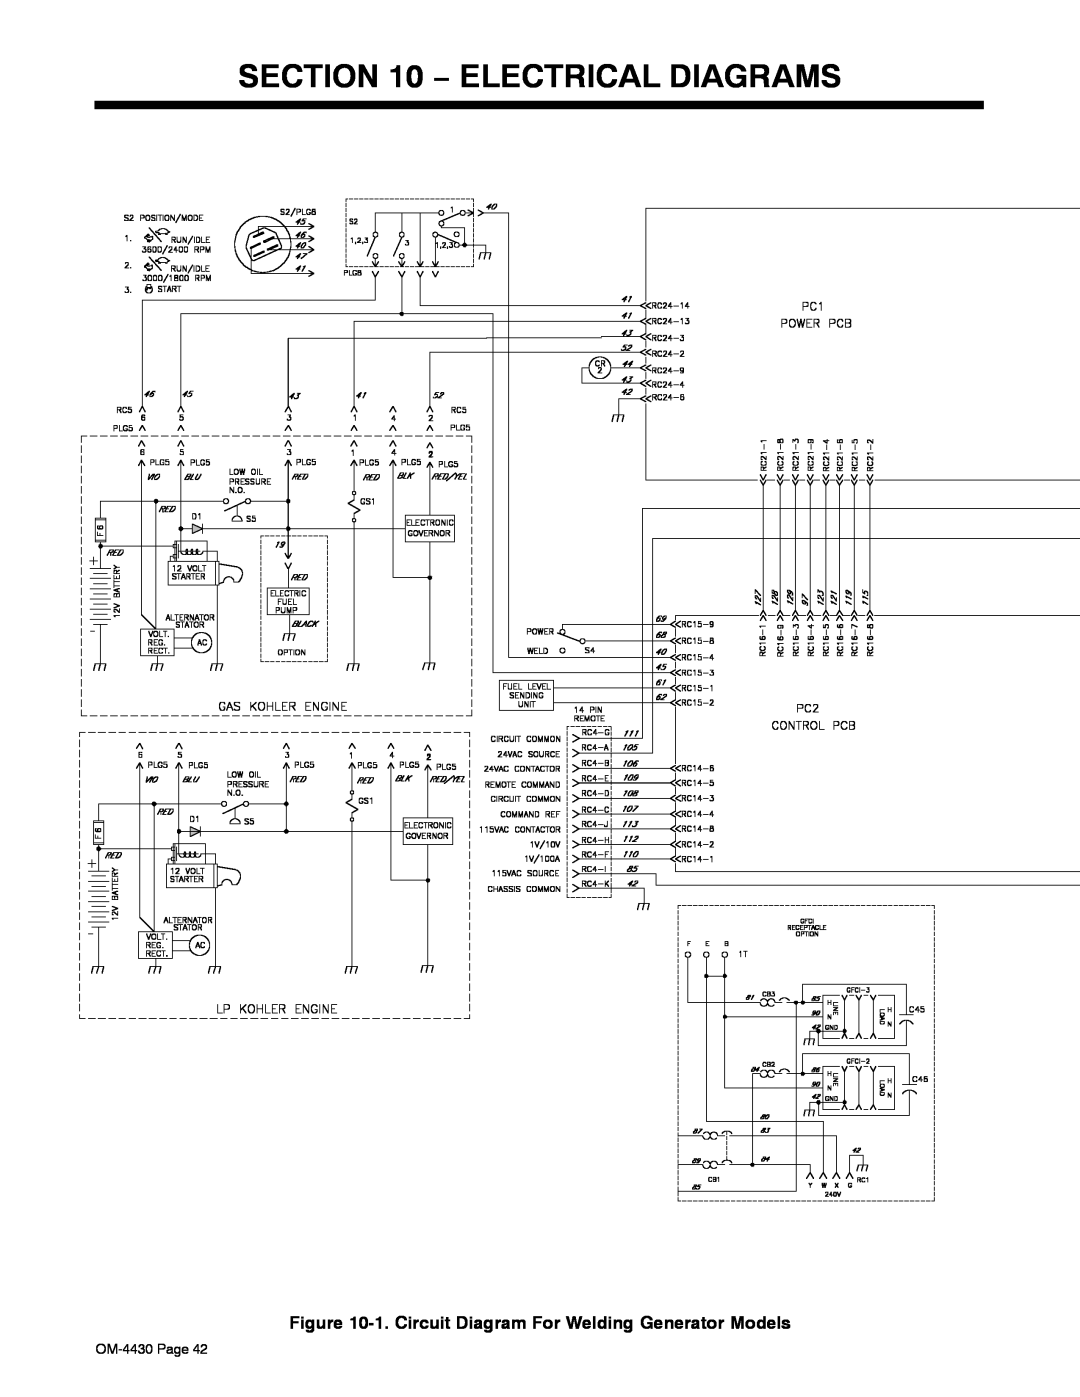 Miller Electric 280 NT manual Electrical Diagrams, 1. Circuit Diagram For Welding Generator Models 